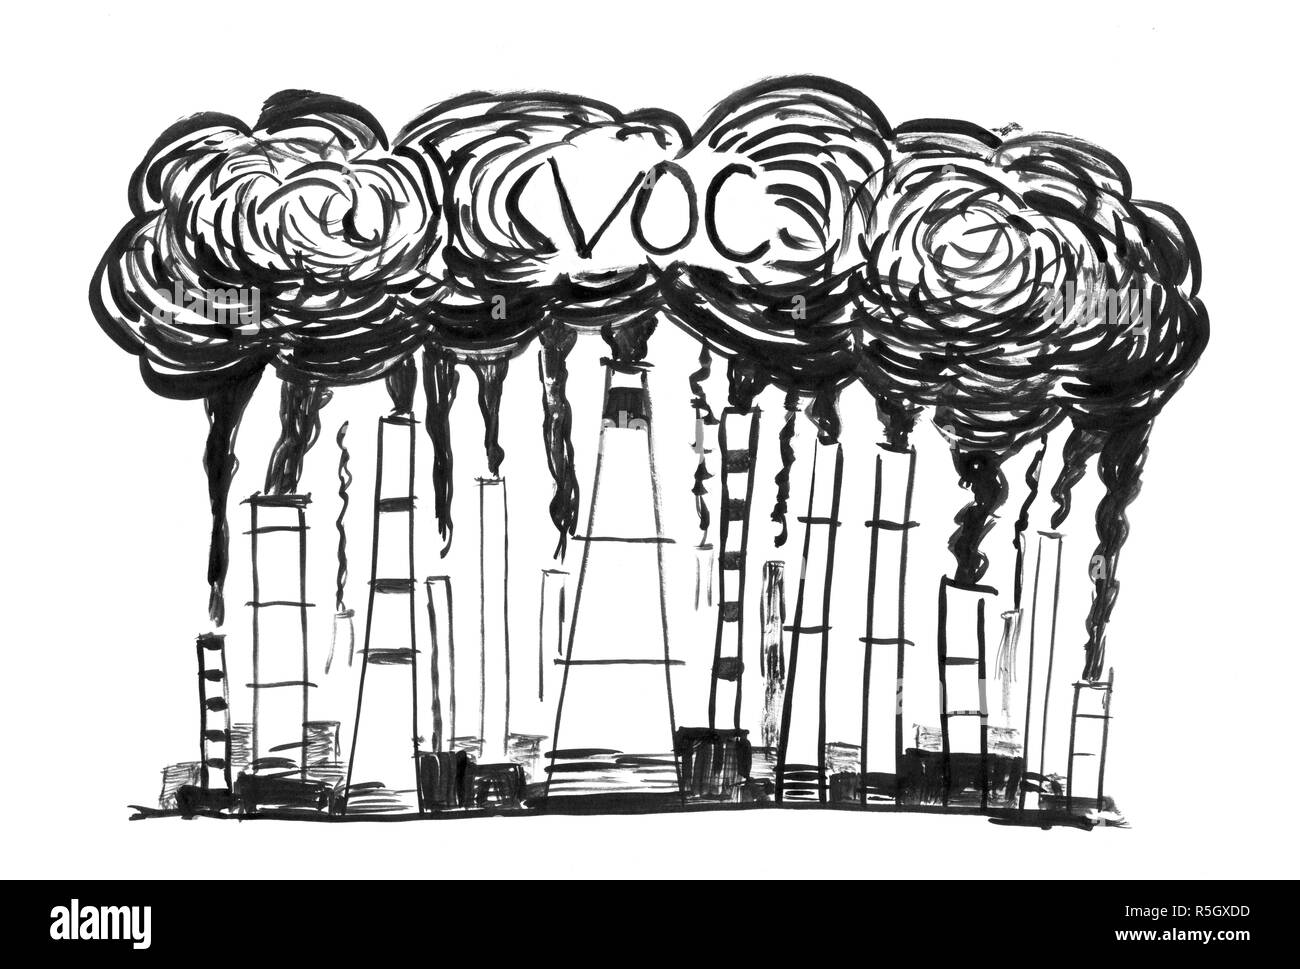 Schwarze Tinte Grunge Hand Zeichnung des rauchenden Schlote, Konzept der Industrie oder der Fabrik Flüchtige organische Verbindungen Luftverschmutzung Stockfoto